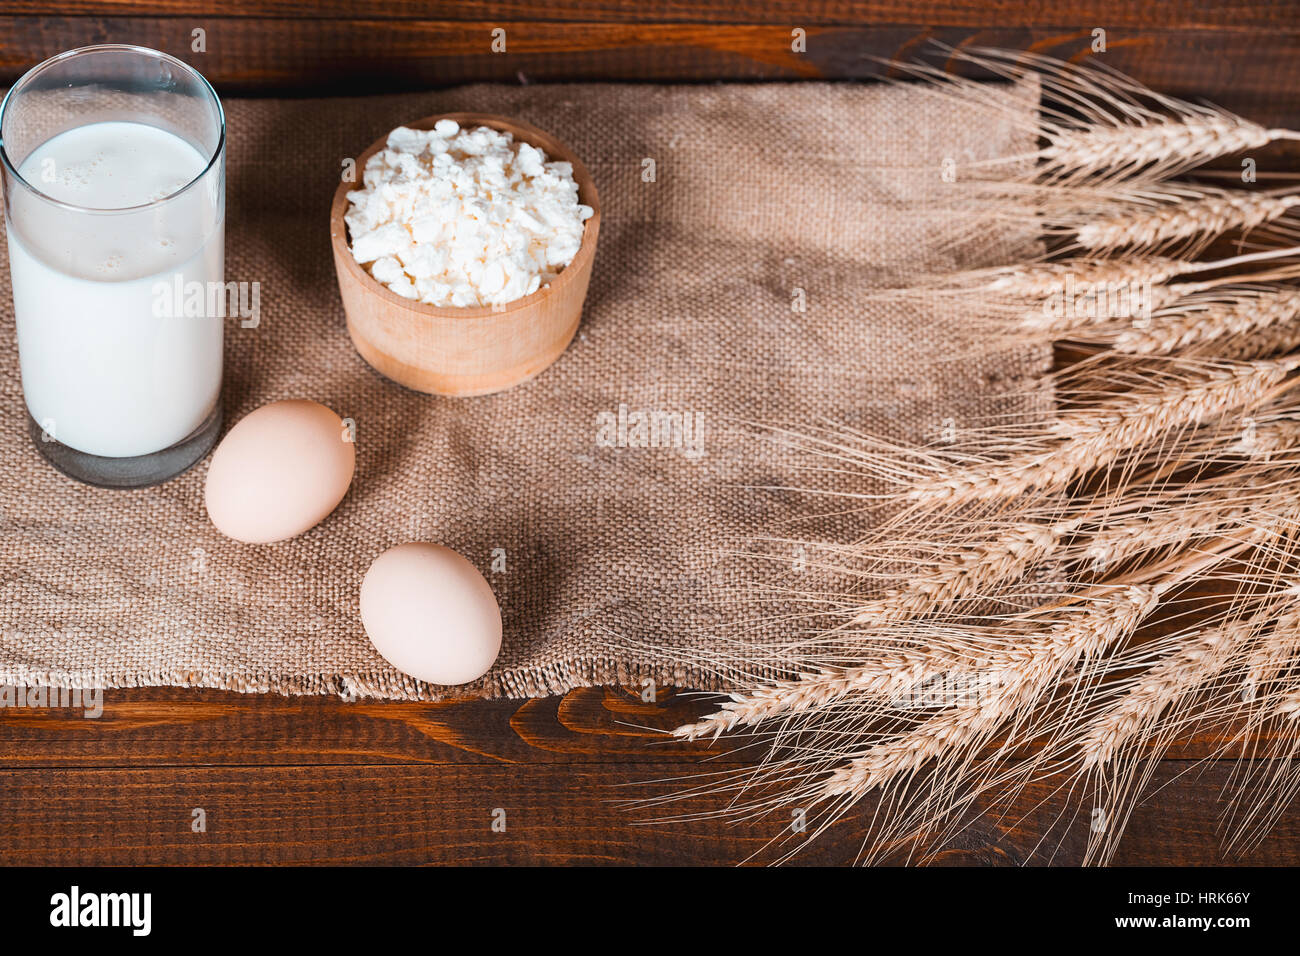 Les produits faits maison : le lait, le fromage, la crème et les oeufs sur le vieux fond de bois avec des épis de blé. Avec l'espace pour votre texte Banque D'Images